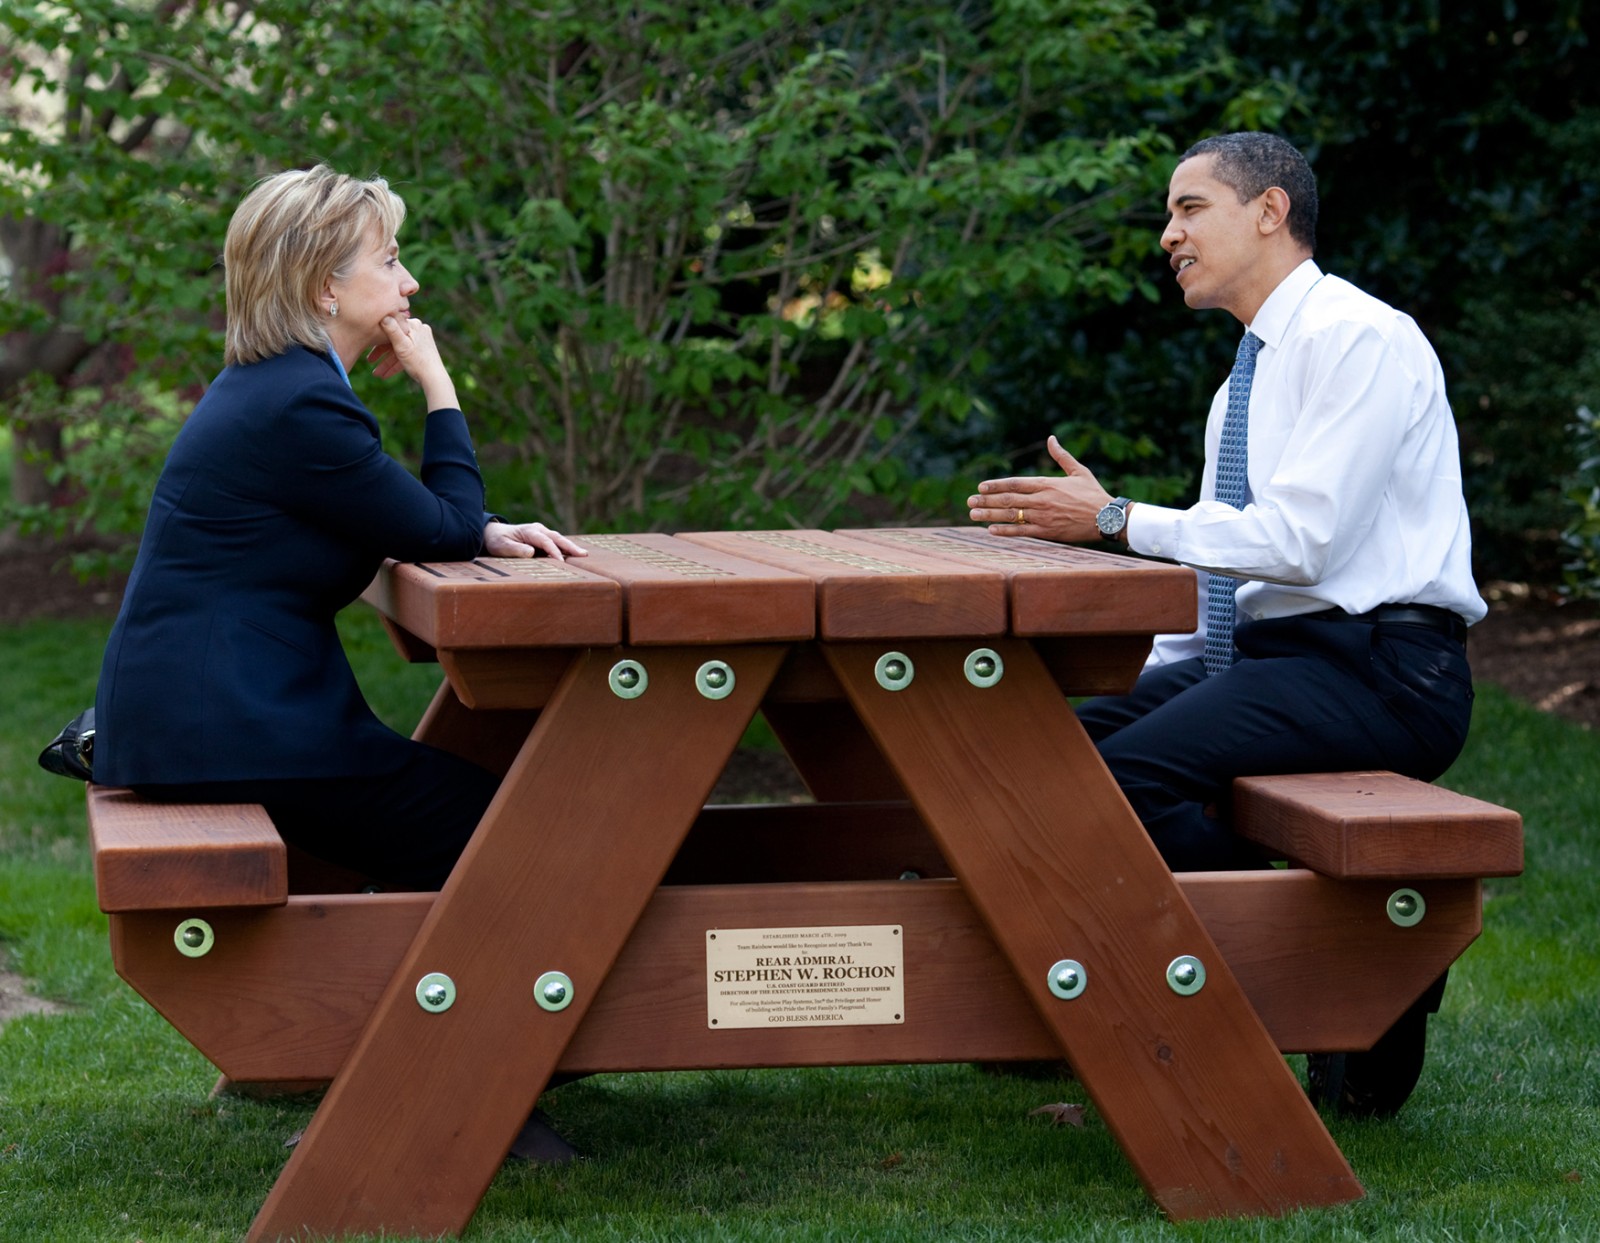 אובמה וקלינטון, עצם היותה מועמדת לנשיאות היא היסטוריה. צילום: הבית הלבן